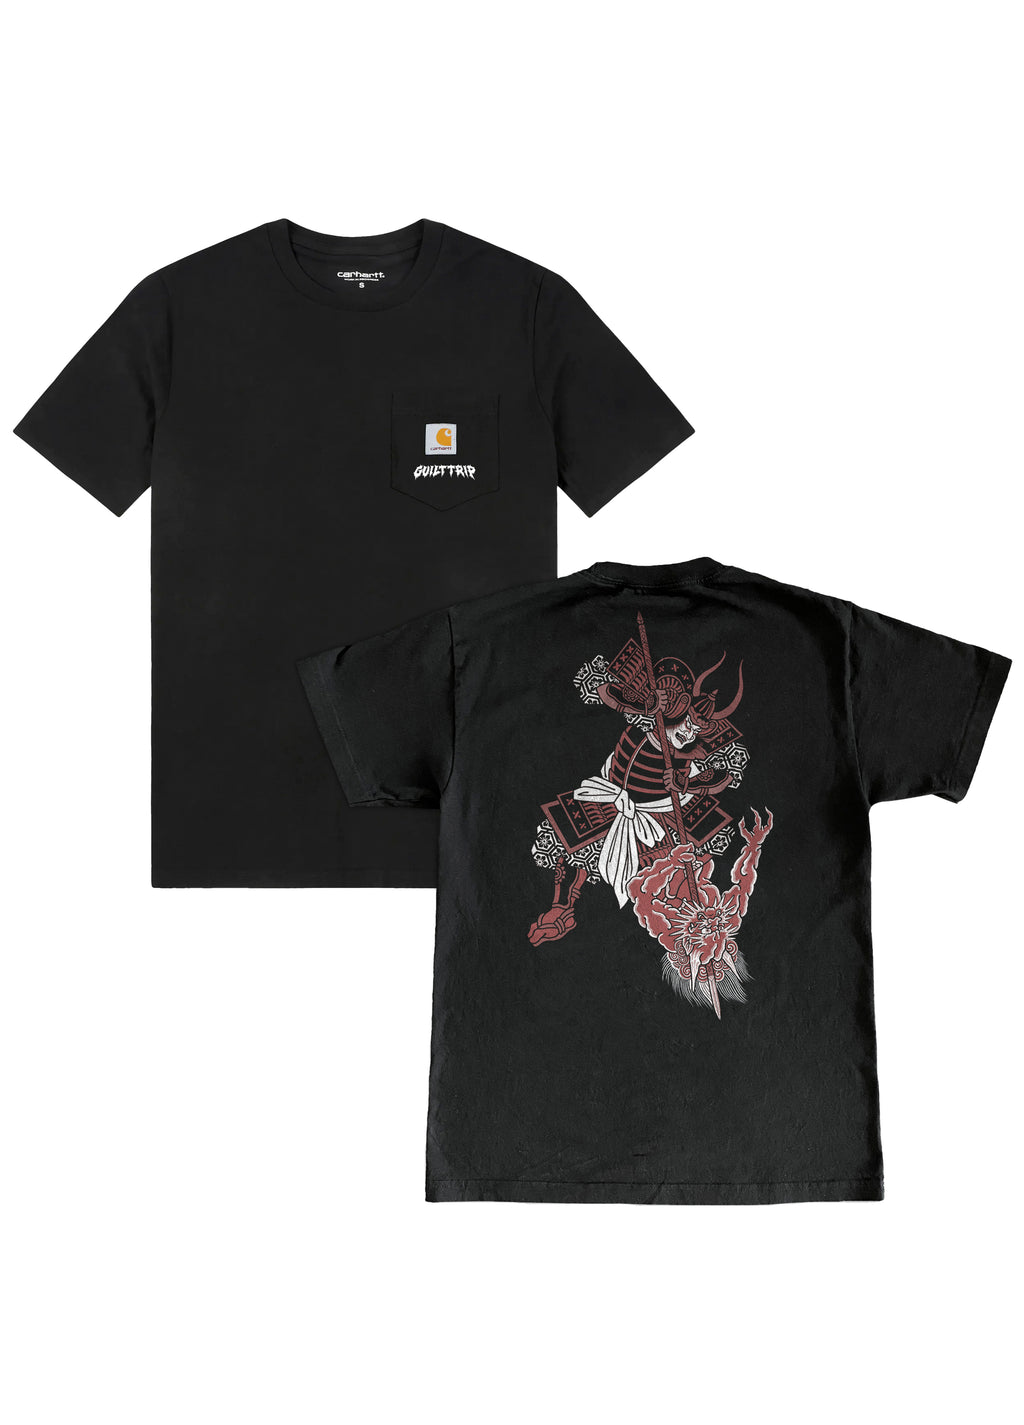 Guilt Trip - Carhartt Samurai T-Shirt